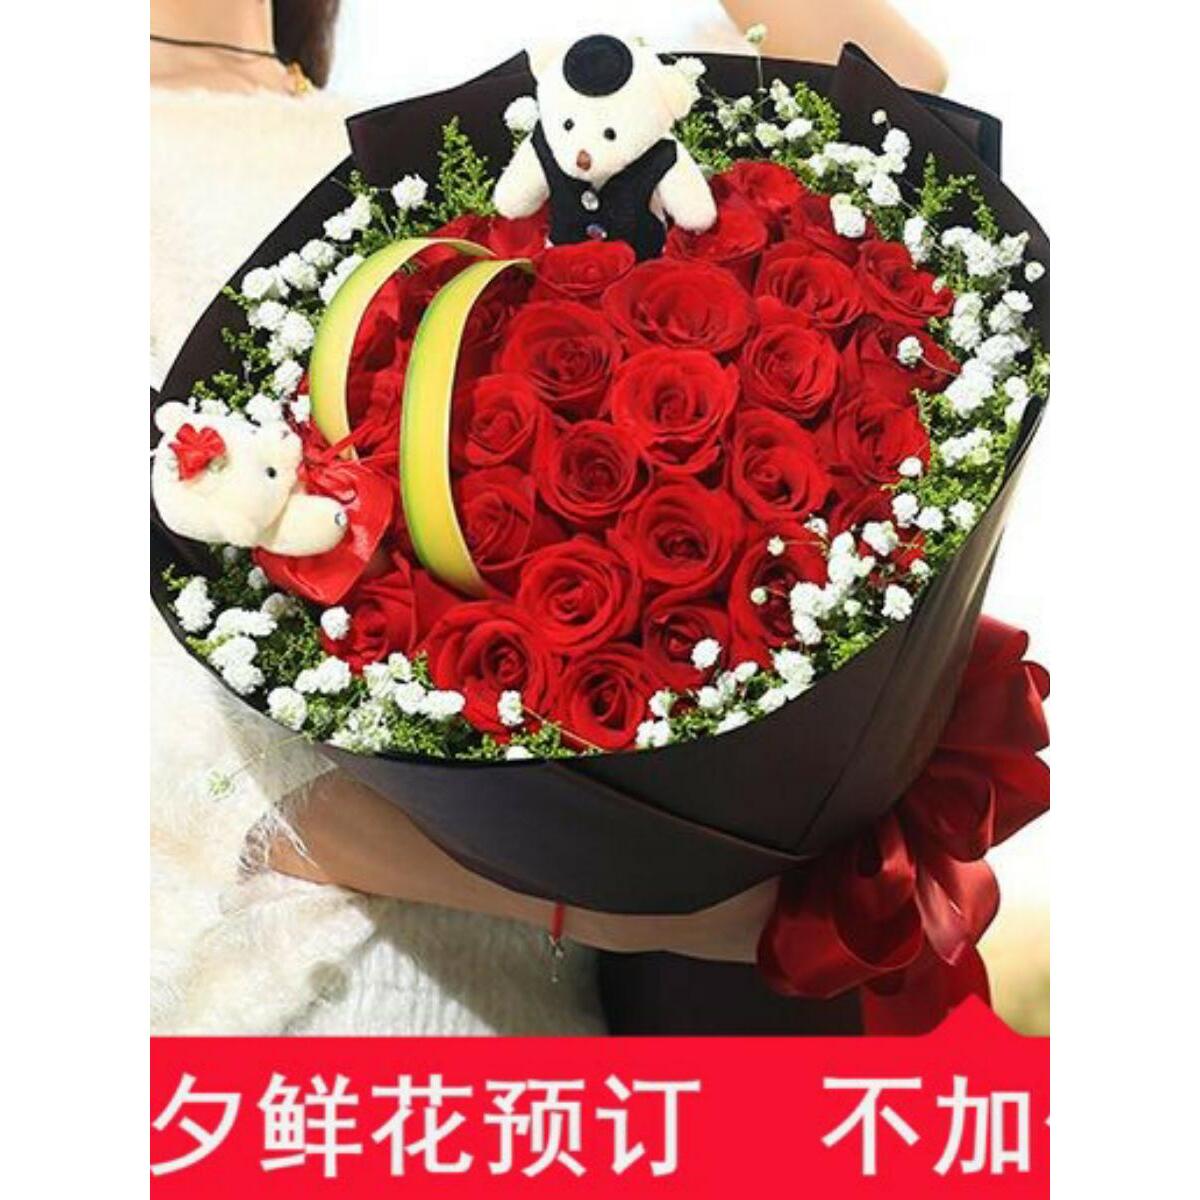 红玫瑰花束礼盒生日礼物送女友鲜花速递同城泰安市岱岳泰山区送花